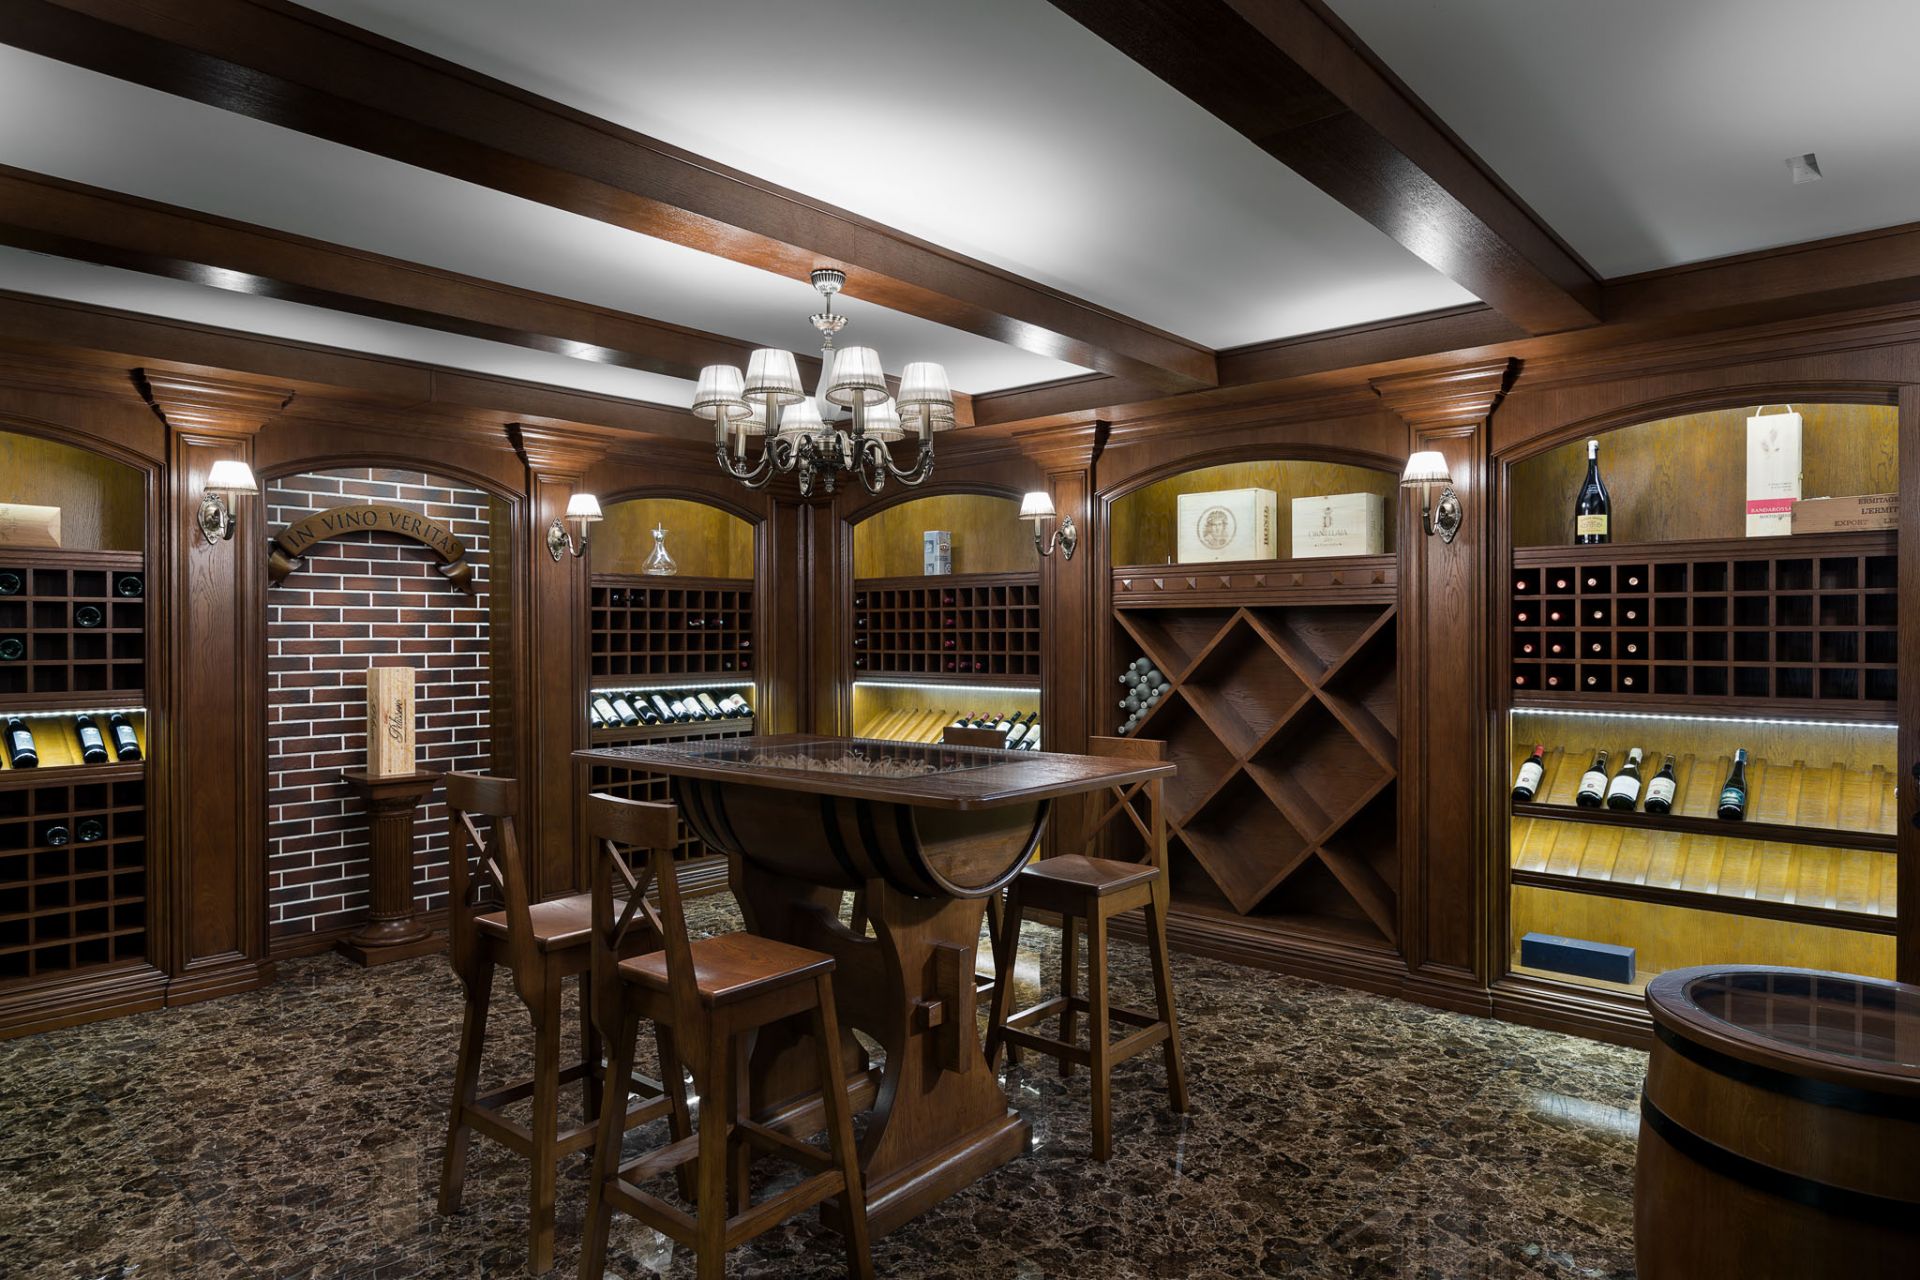 Wine cellar design